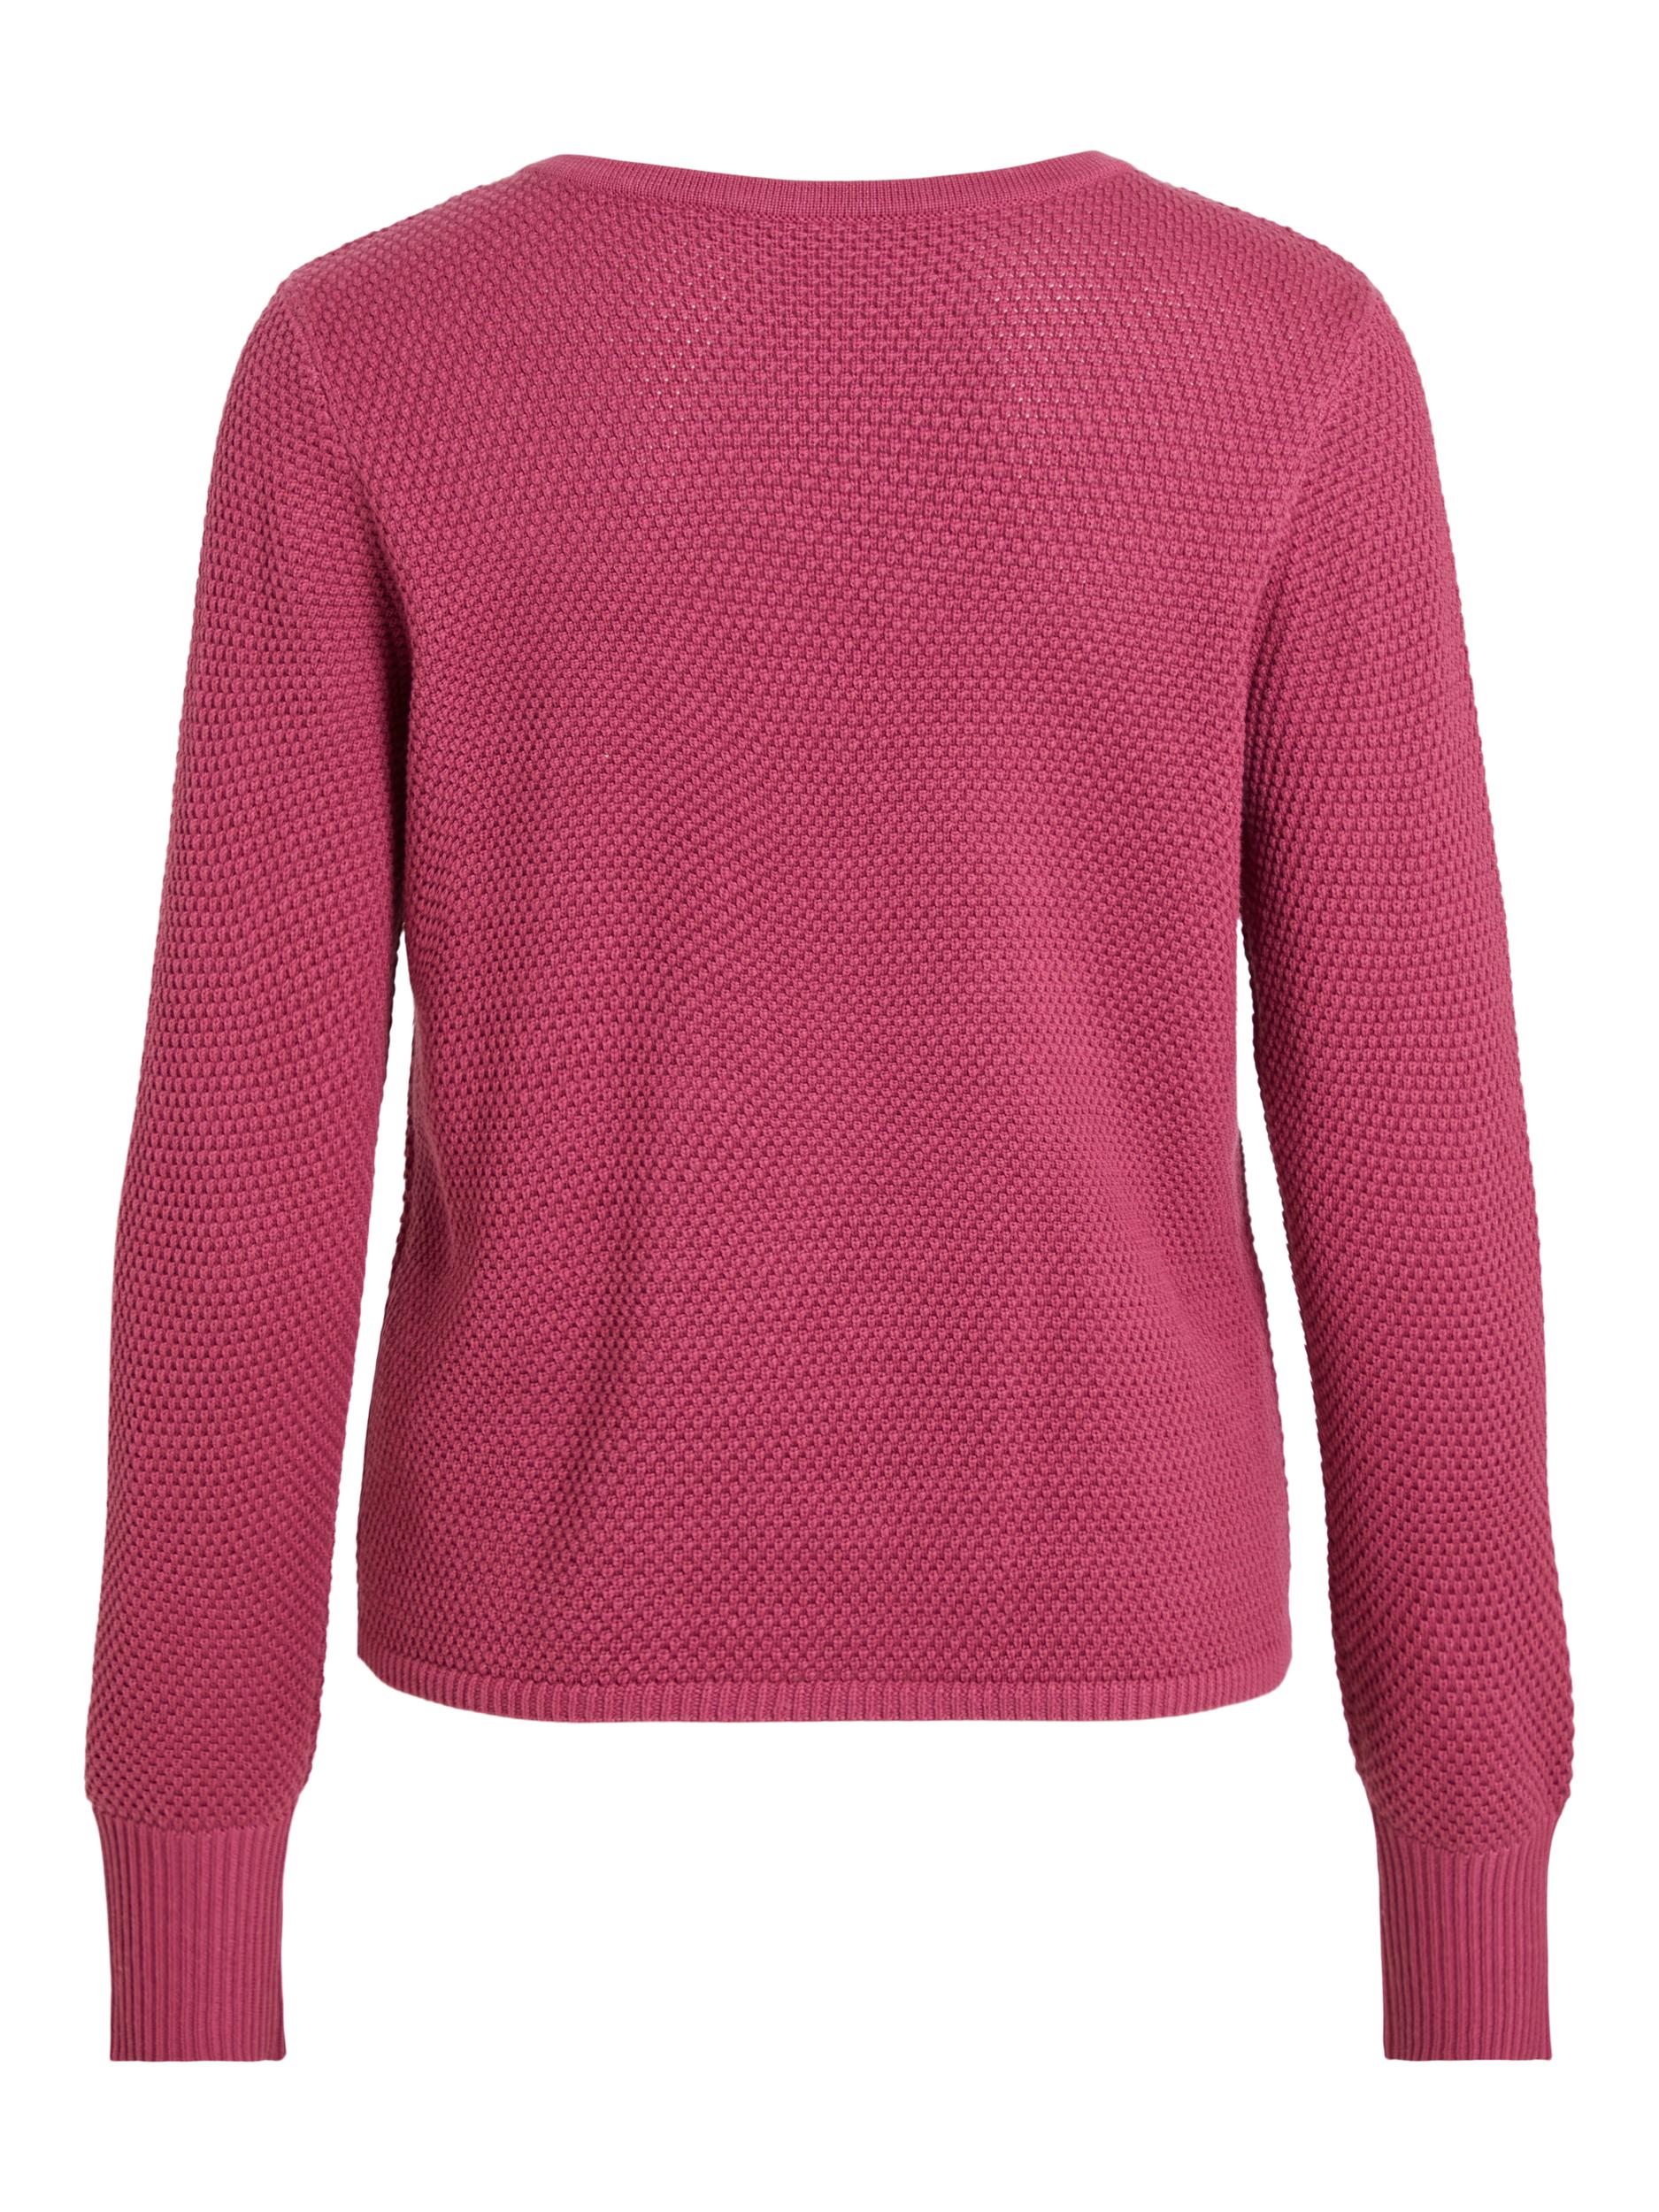 Odzież Kobiety VILA Sweter Chassa w kolorze Różowym 